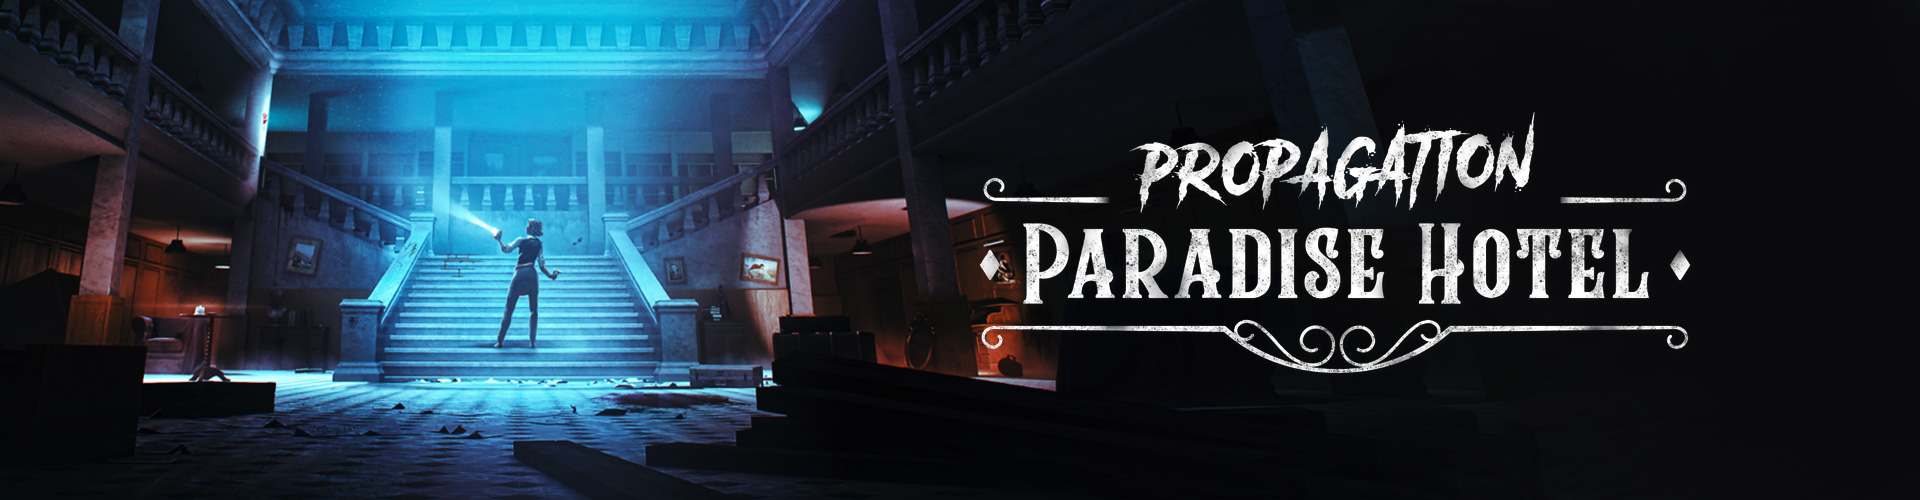 Propagation Paradise Hotel est un jeu dâhorreur psychologique en VR